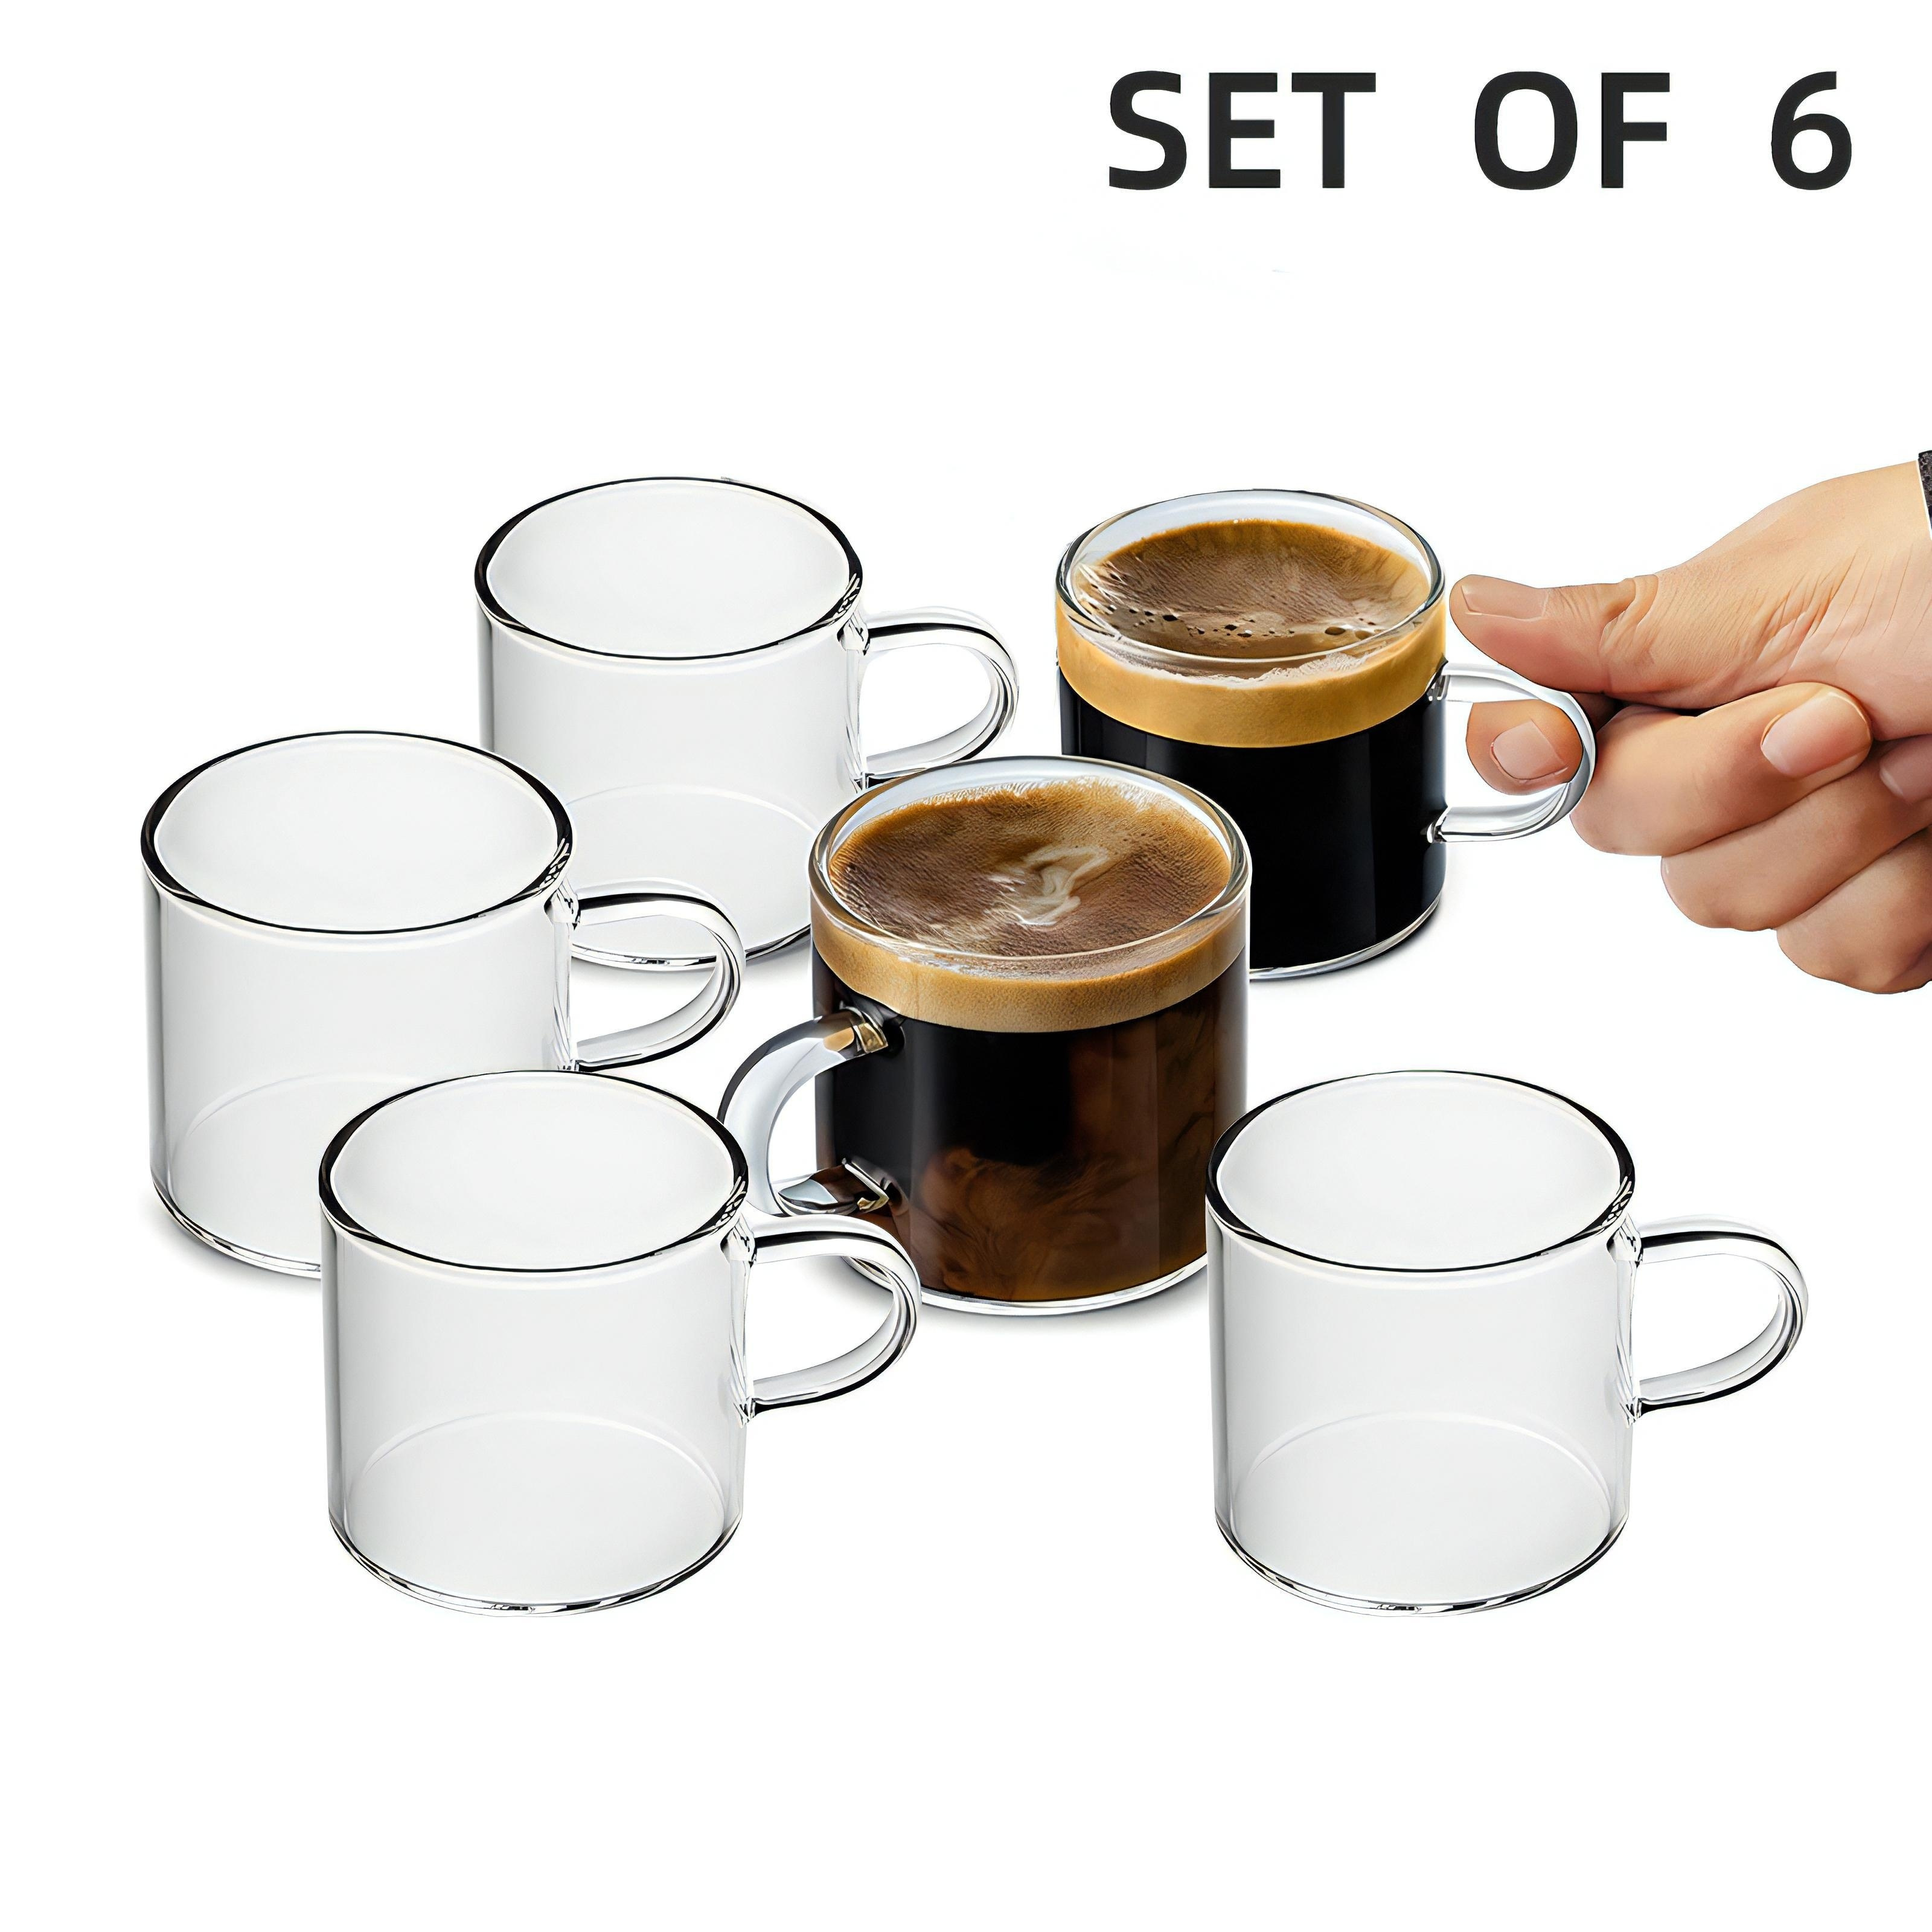 Tazas de café expreso de 4 onzas – Juego de 2 tazas transparentes aisladas  con asa – Taza Demitasse italiana de doble pared – Vasos de chupito de café